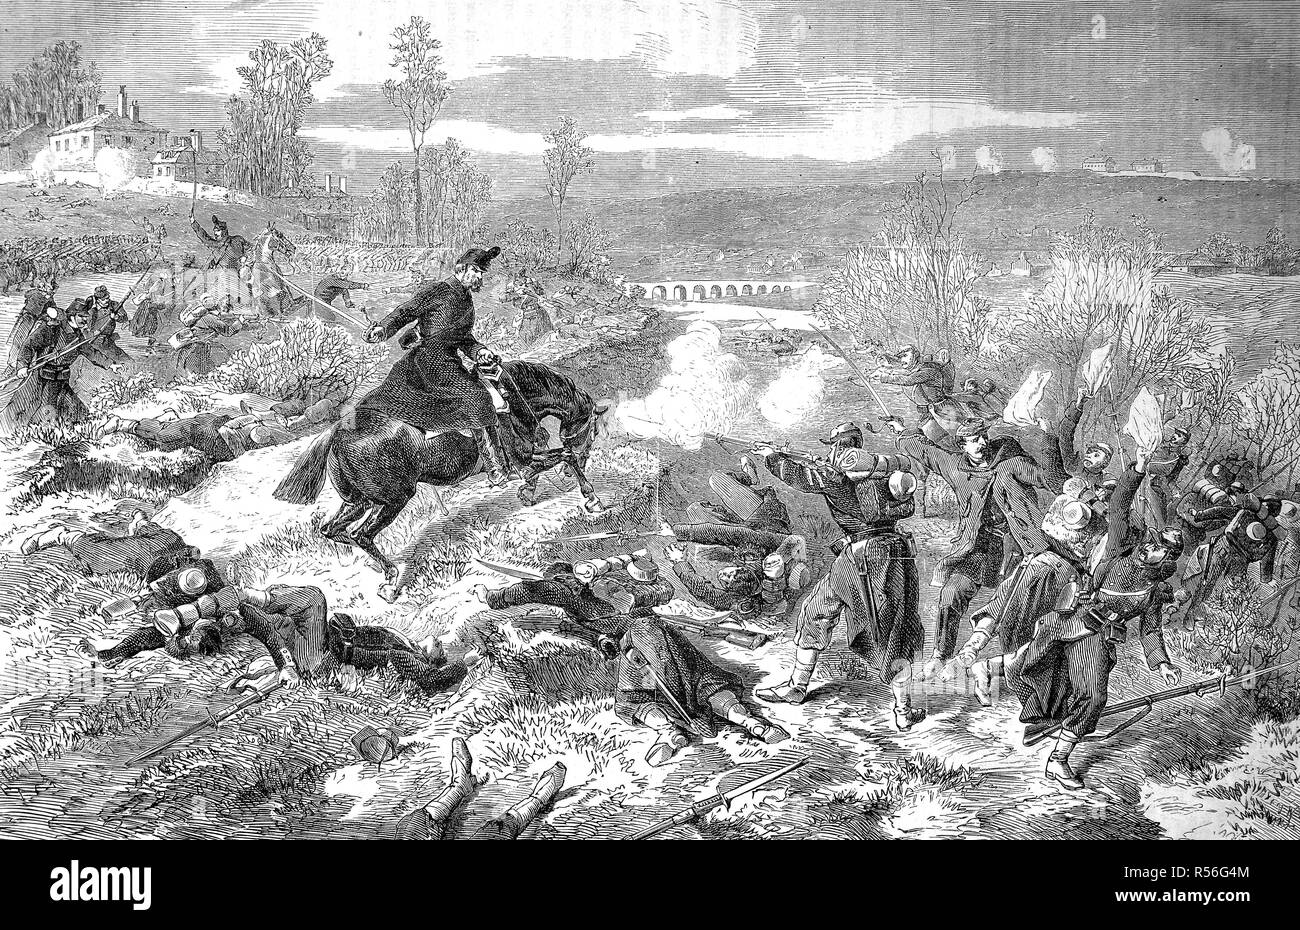 La Saxe Royale Rifle Regiment n° 108 dans la bataille près de Villiers le 2 décembre, la guerre franco-allemande de 1870/71, woodcut, France Banque D'Images